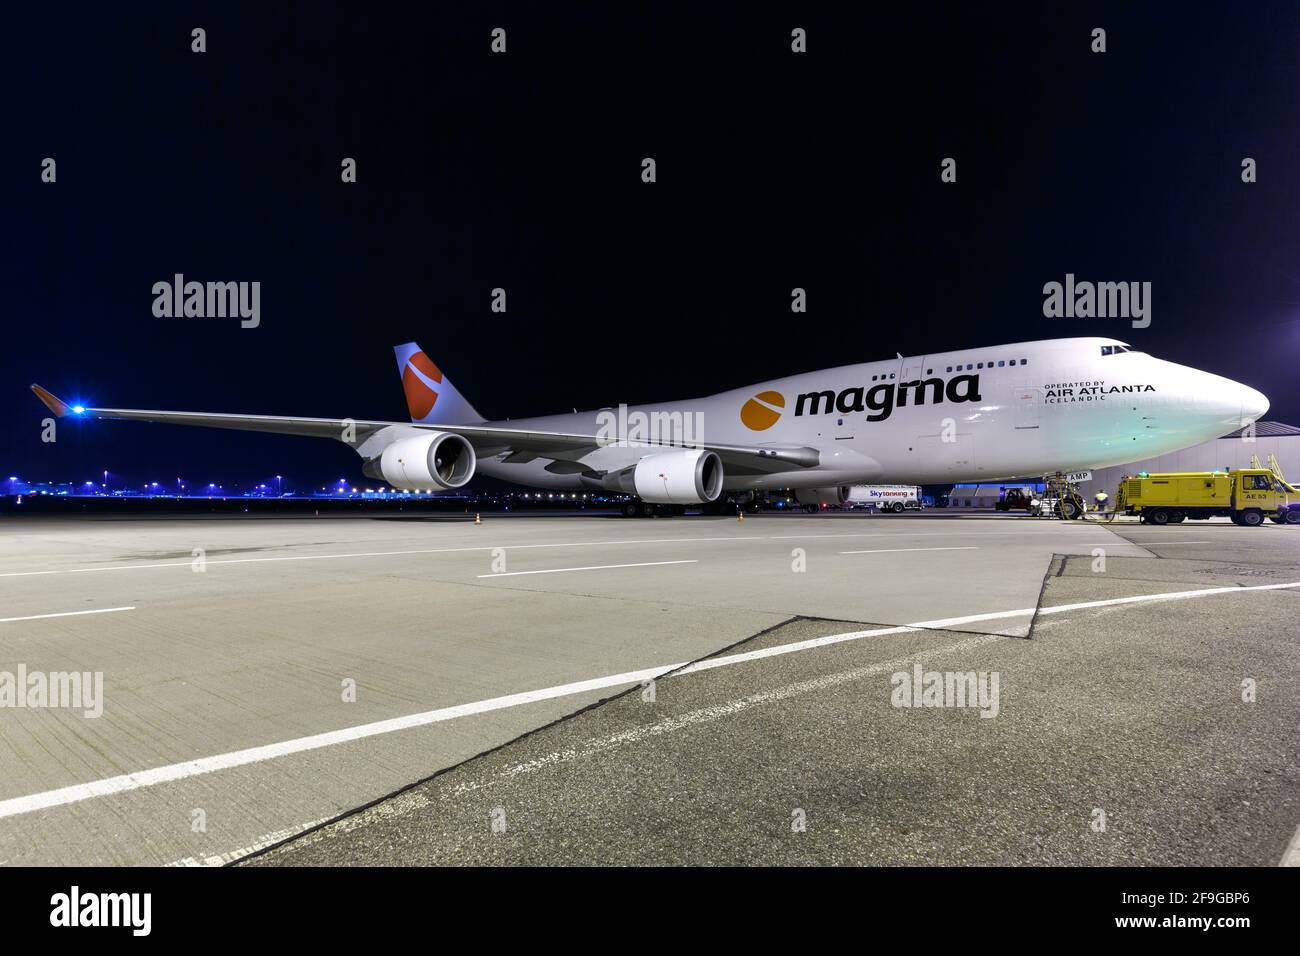 Stuttgart, 7. Februar 2018: Flugzeug der isländischen Magma Boeing 747-400BCF von Air Atlanta am Flughafen Stuttgart (STR) in Deutschland. Boeing ist ein airc Stockfoto